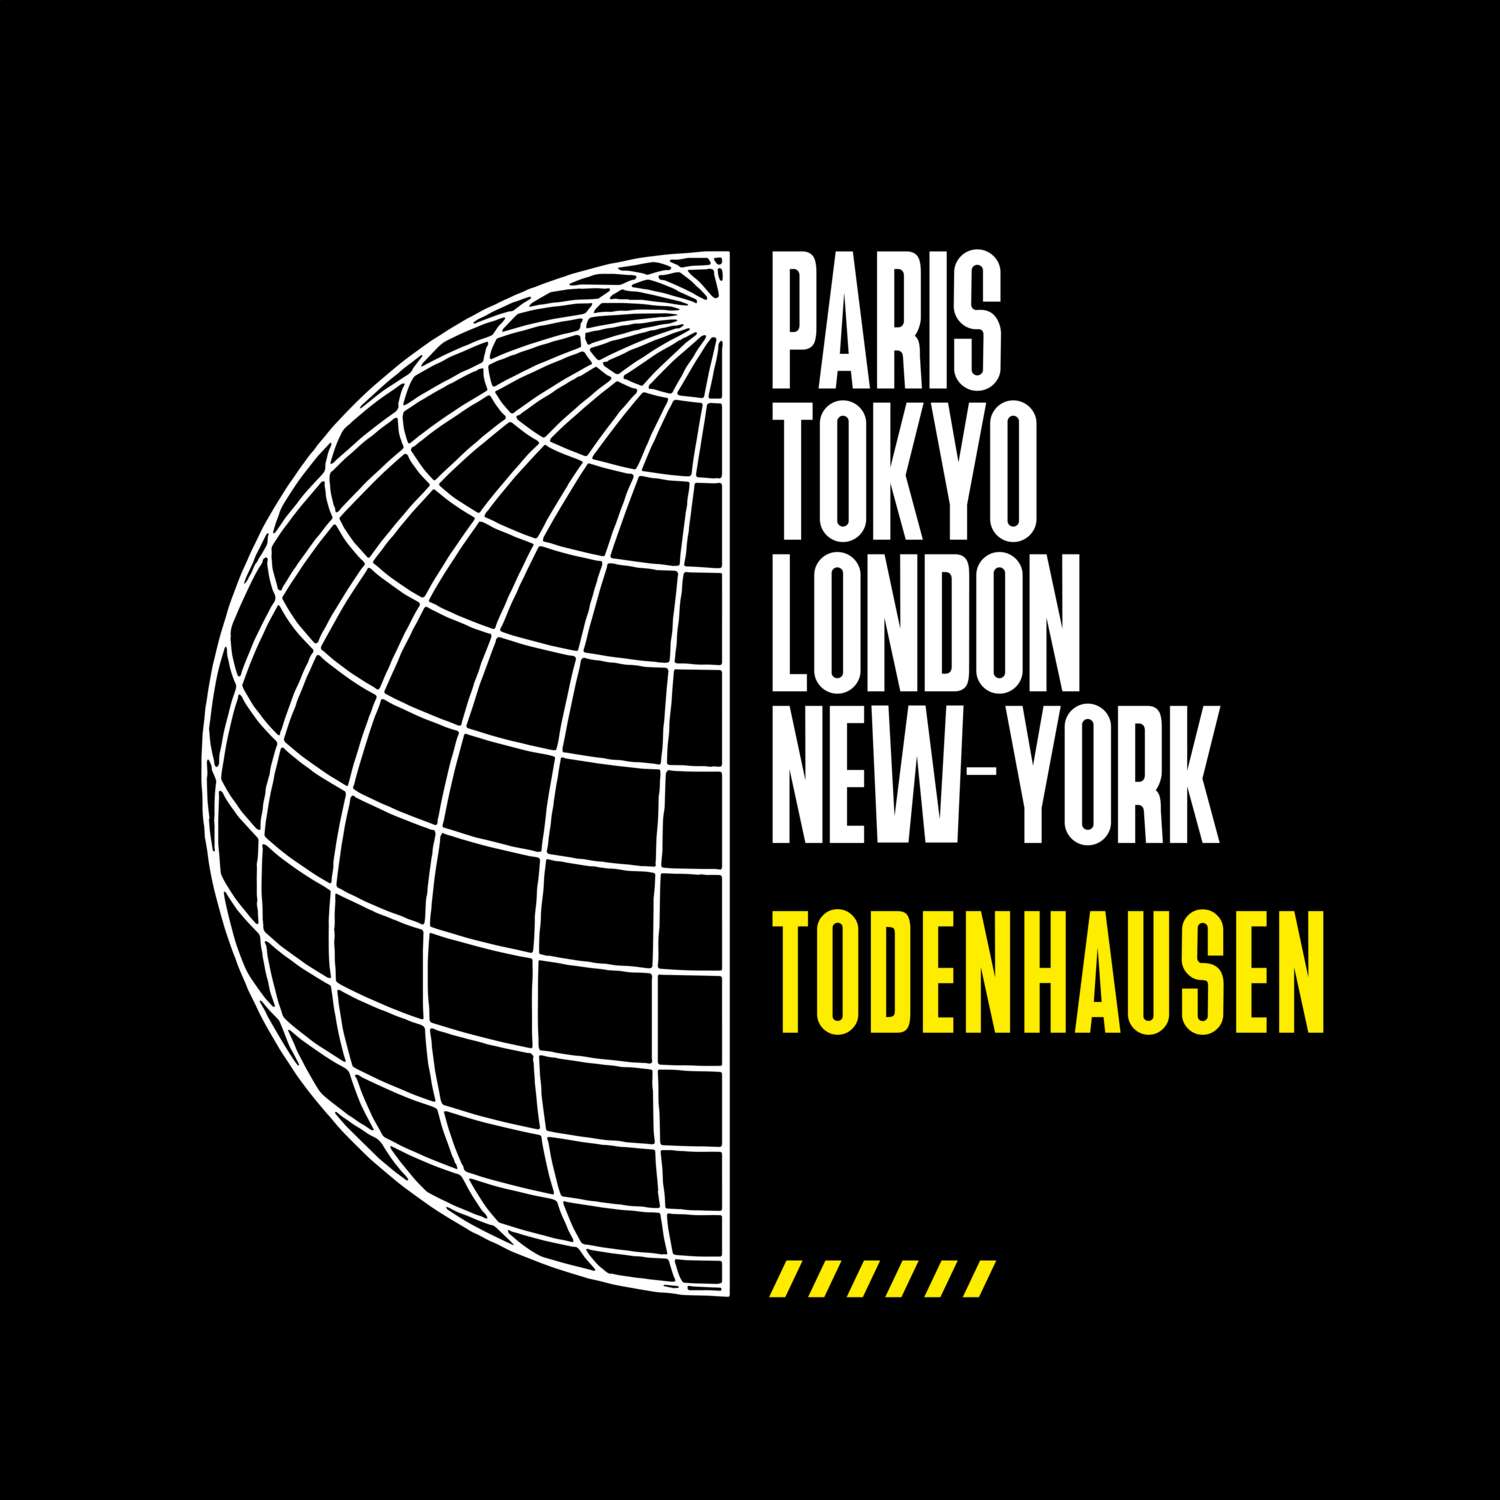 Todenhausen T-Shirt »Paris Tokyo London«